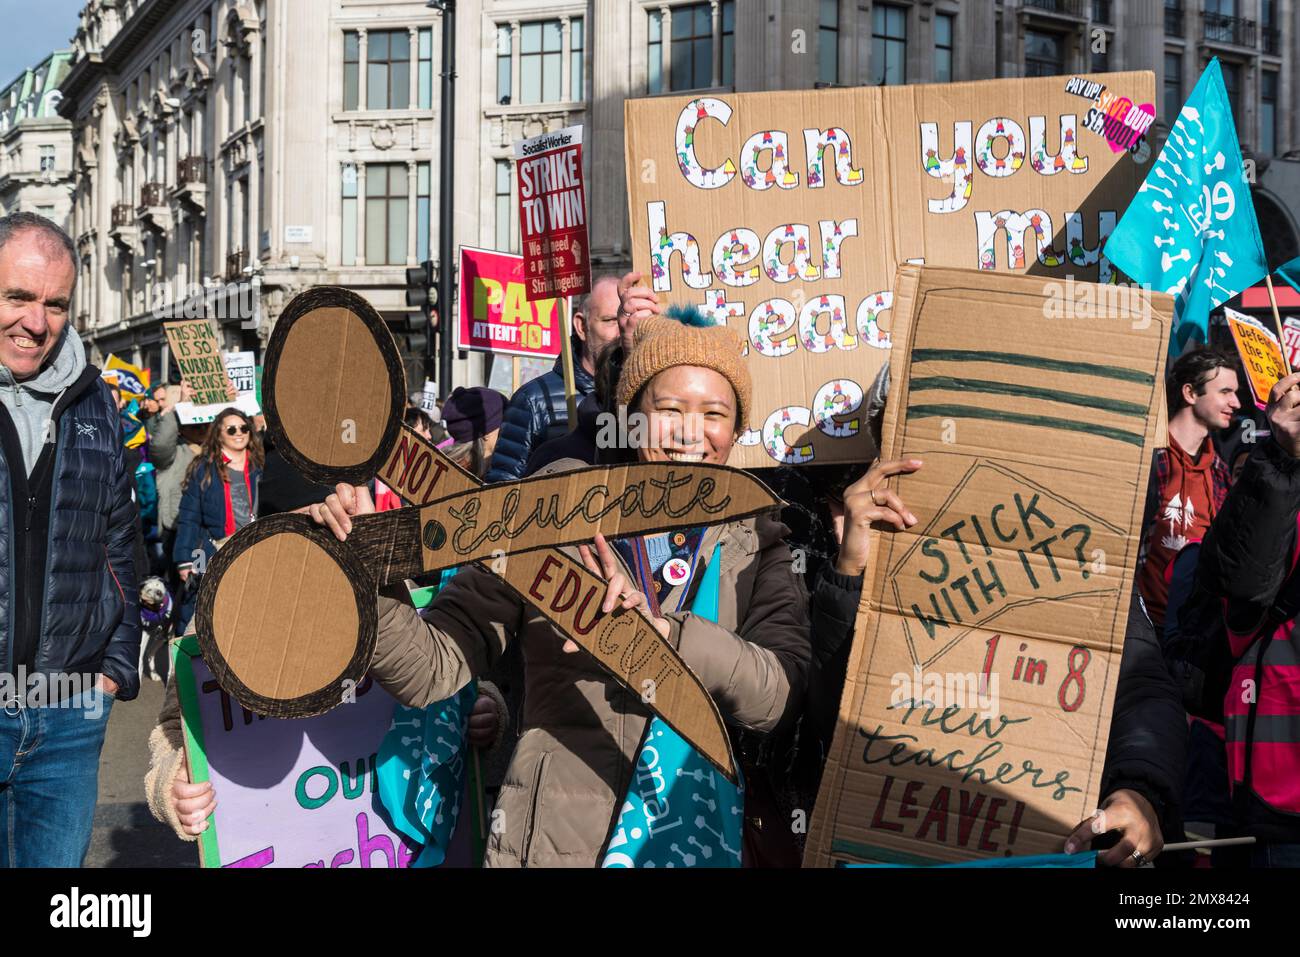 Protesta contra los recortes en la educación, maestros y funcionarios se unen a la huelga masiva en el 'miércoles de huelga', Londres, Reino Unido. 01/02/2023 Foto de stock